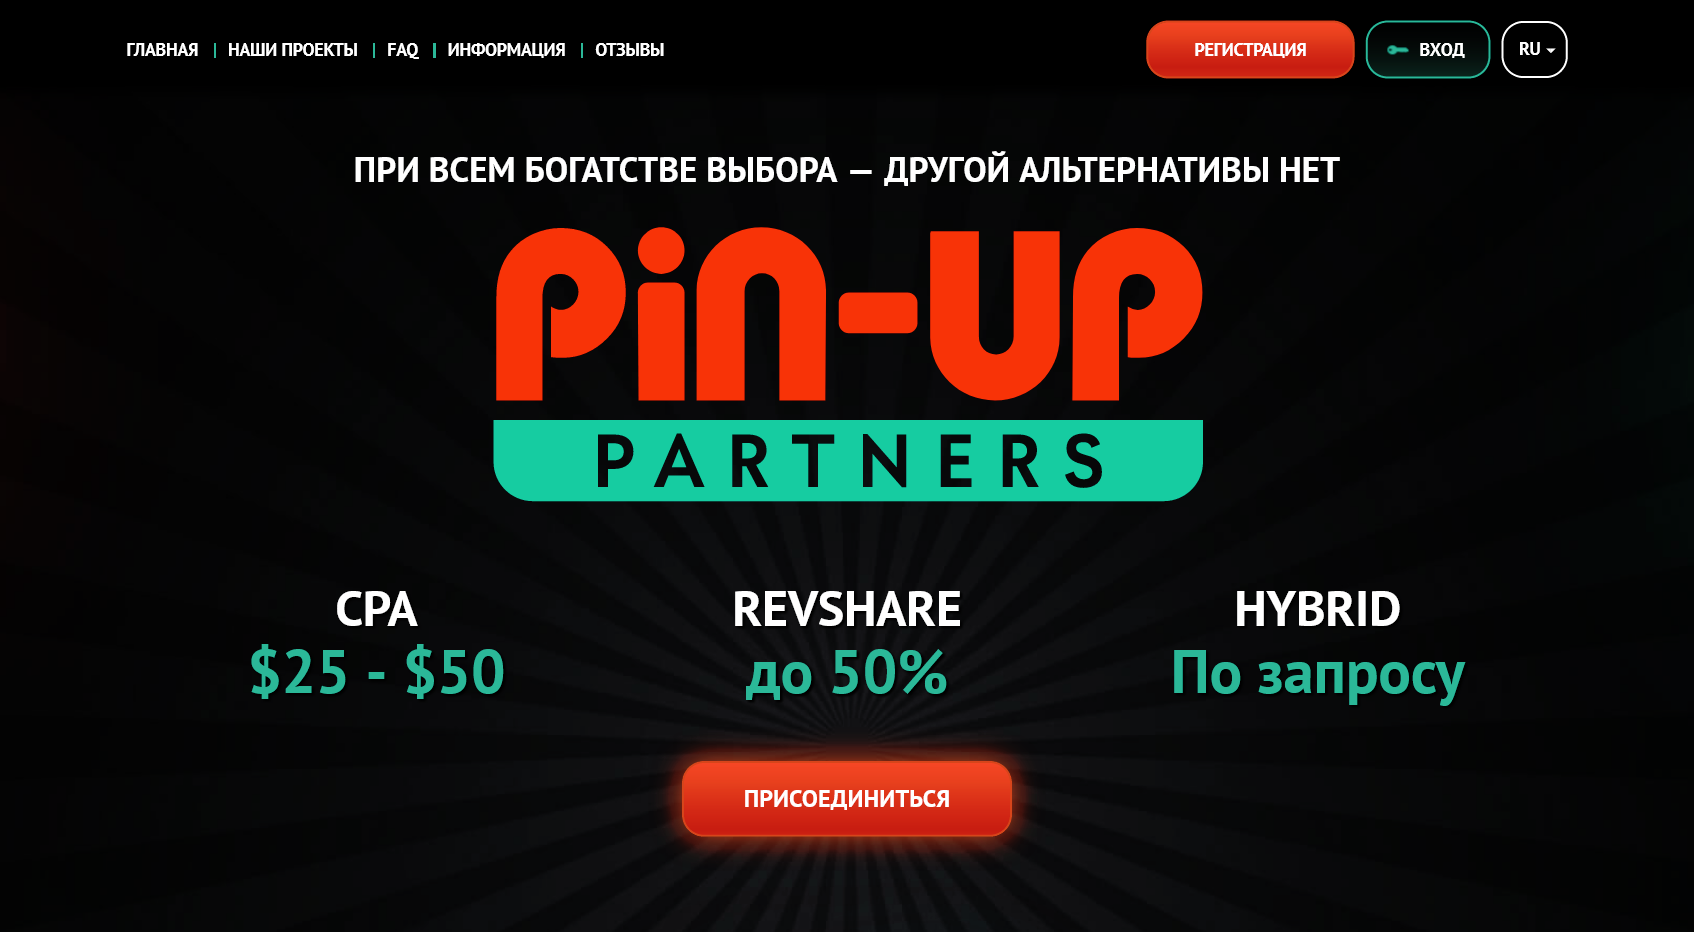 PIN-UP Partners — отзывы, обзор партнерской программы